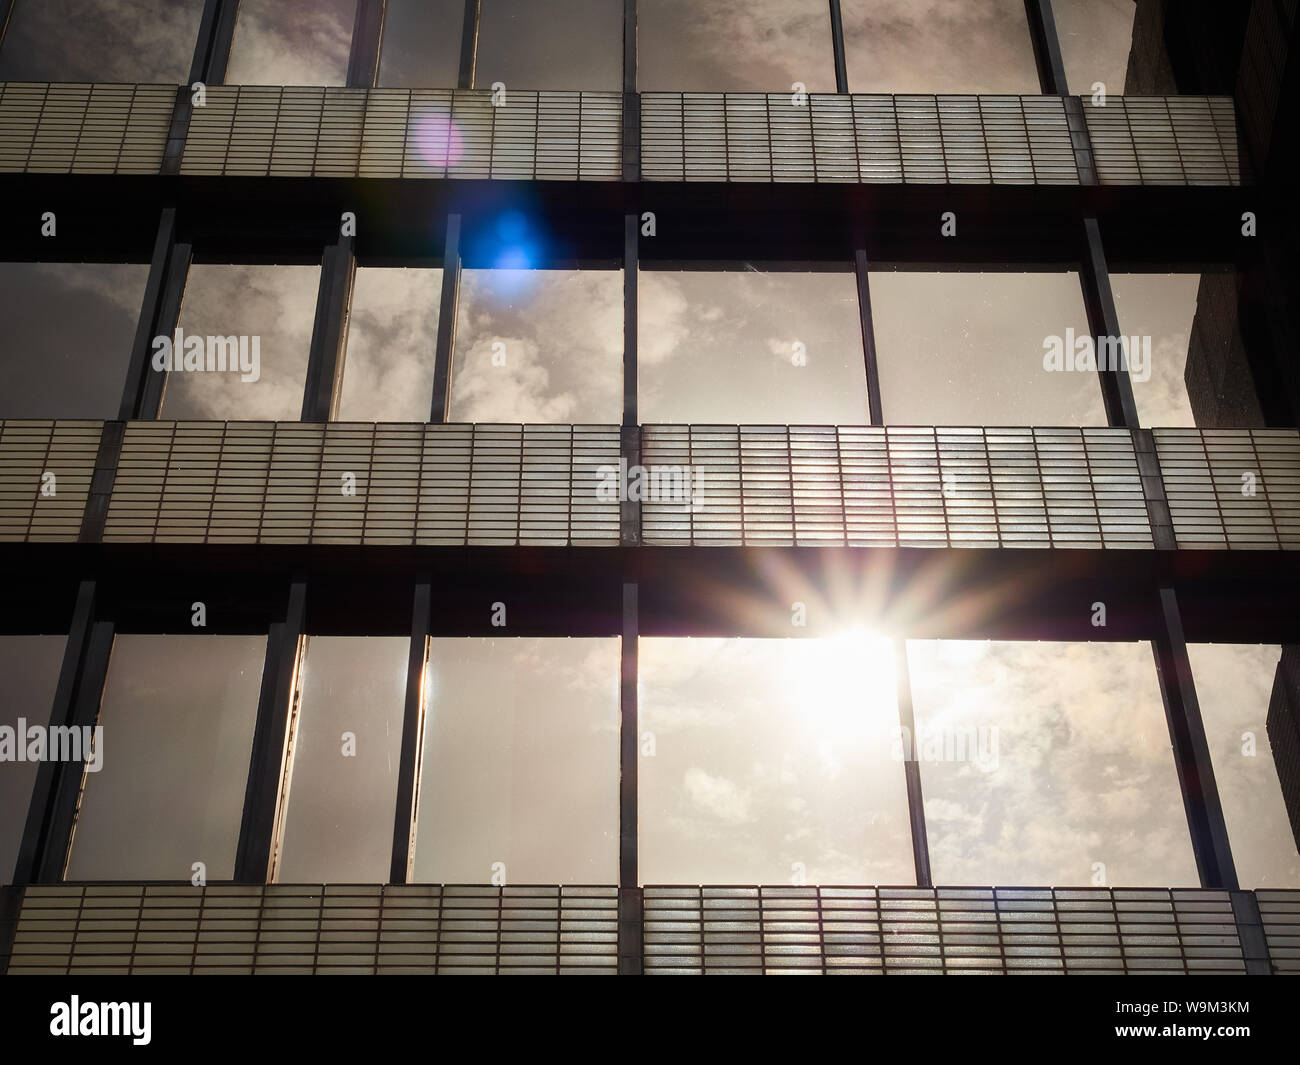 La luz del sol reflejándose en marrón bronce/1970 integrado Windows Office Complex en hileras rectas con una disminución de la perspectiva. Fuente Precinct, Sheffield Foto de stock